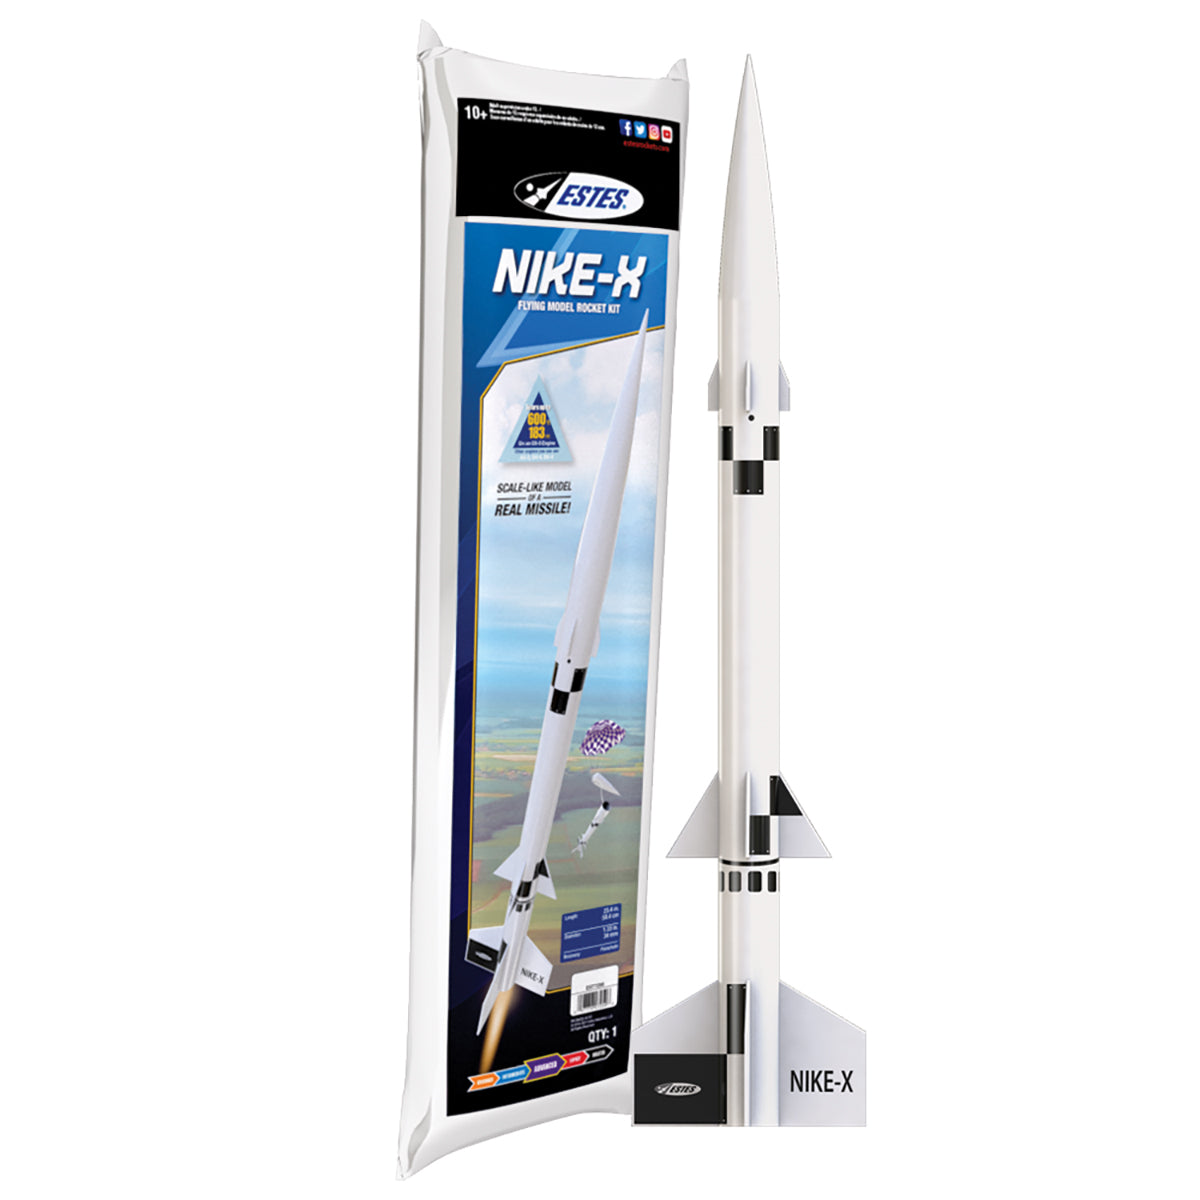 Nike-X Single Stage Rocket Kit